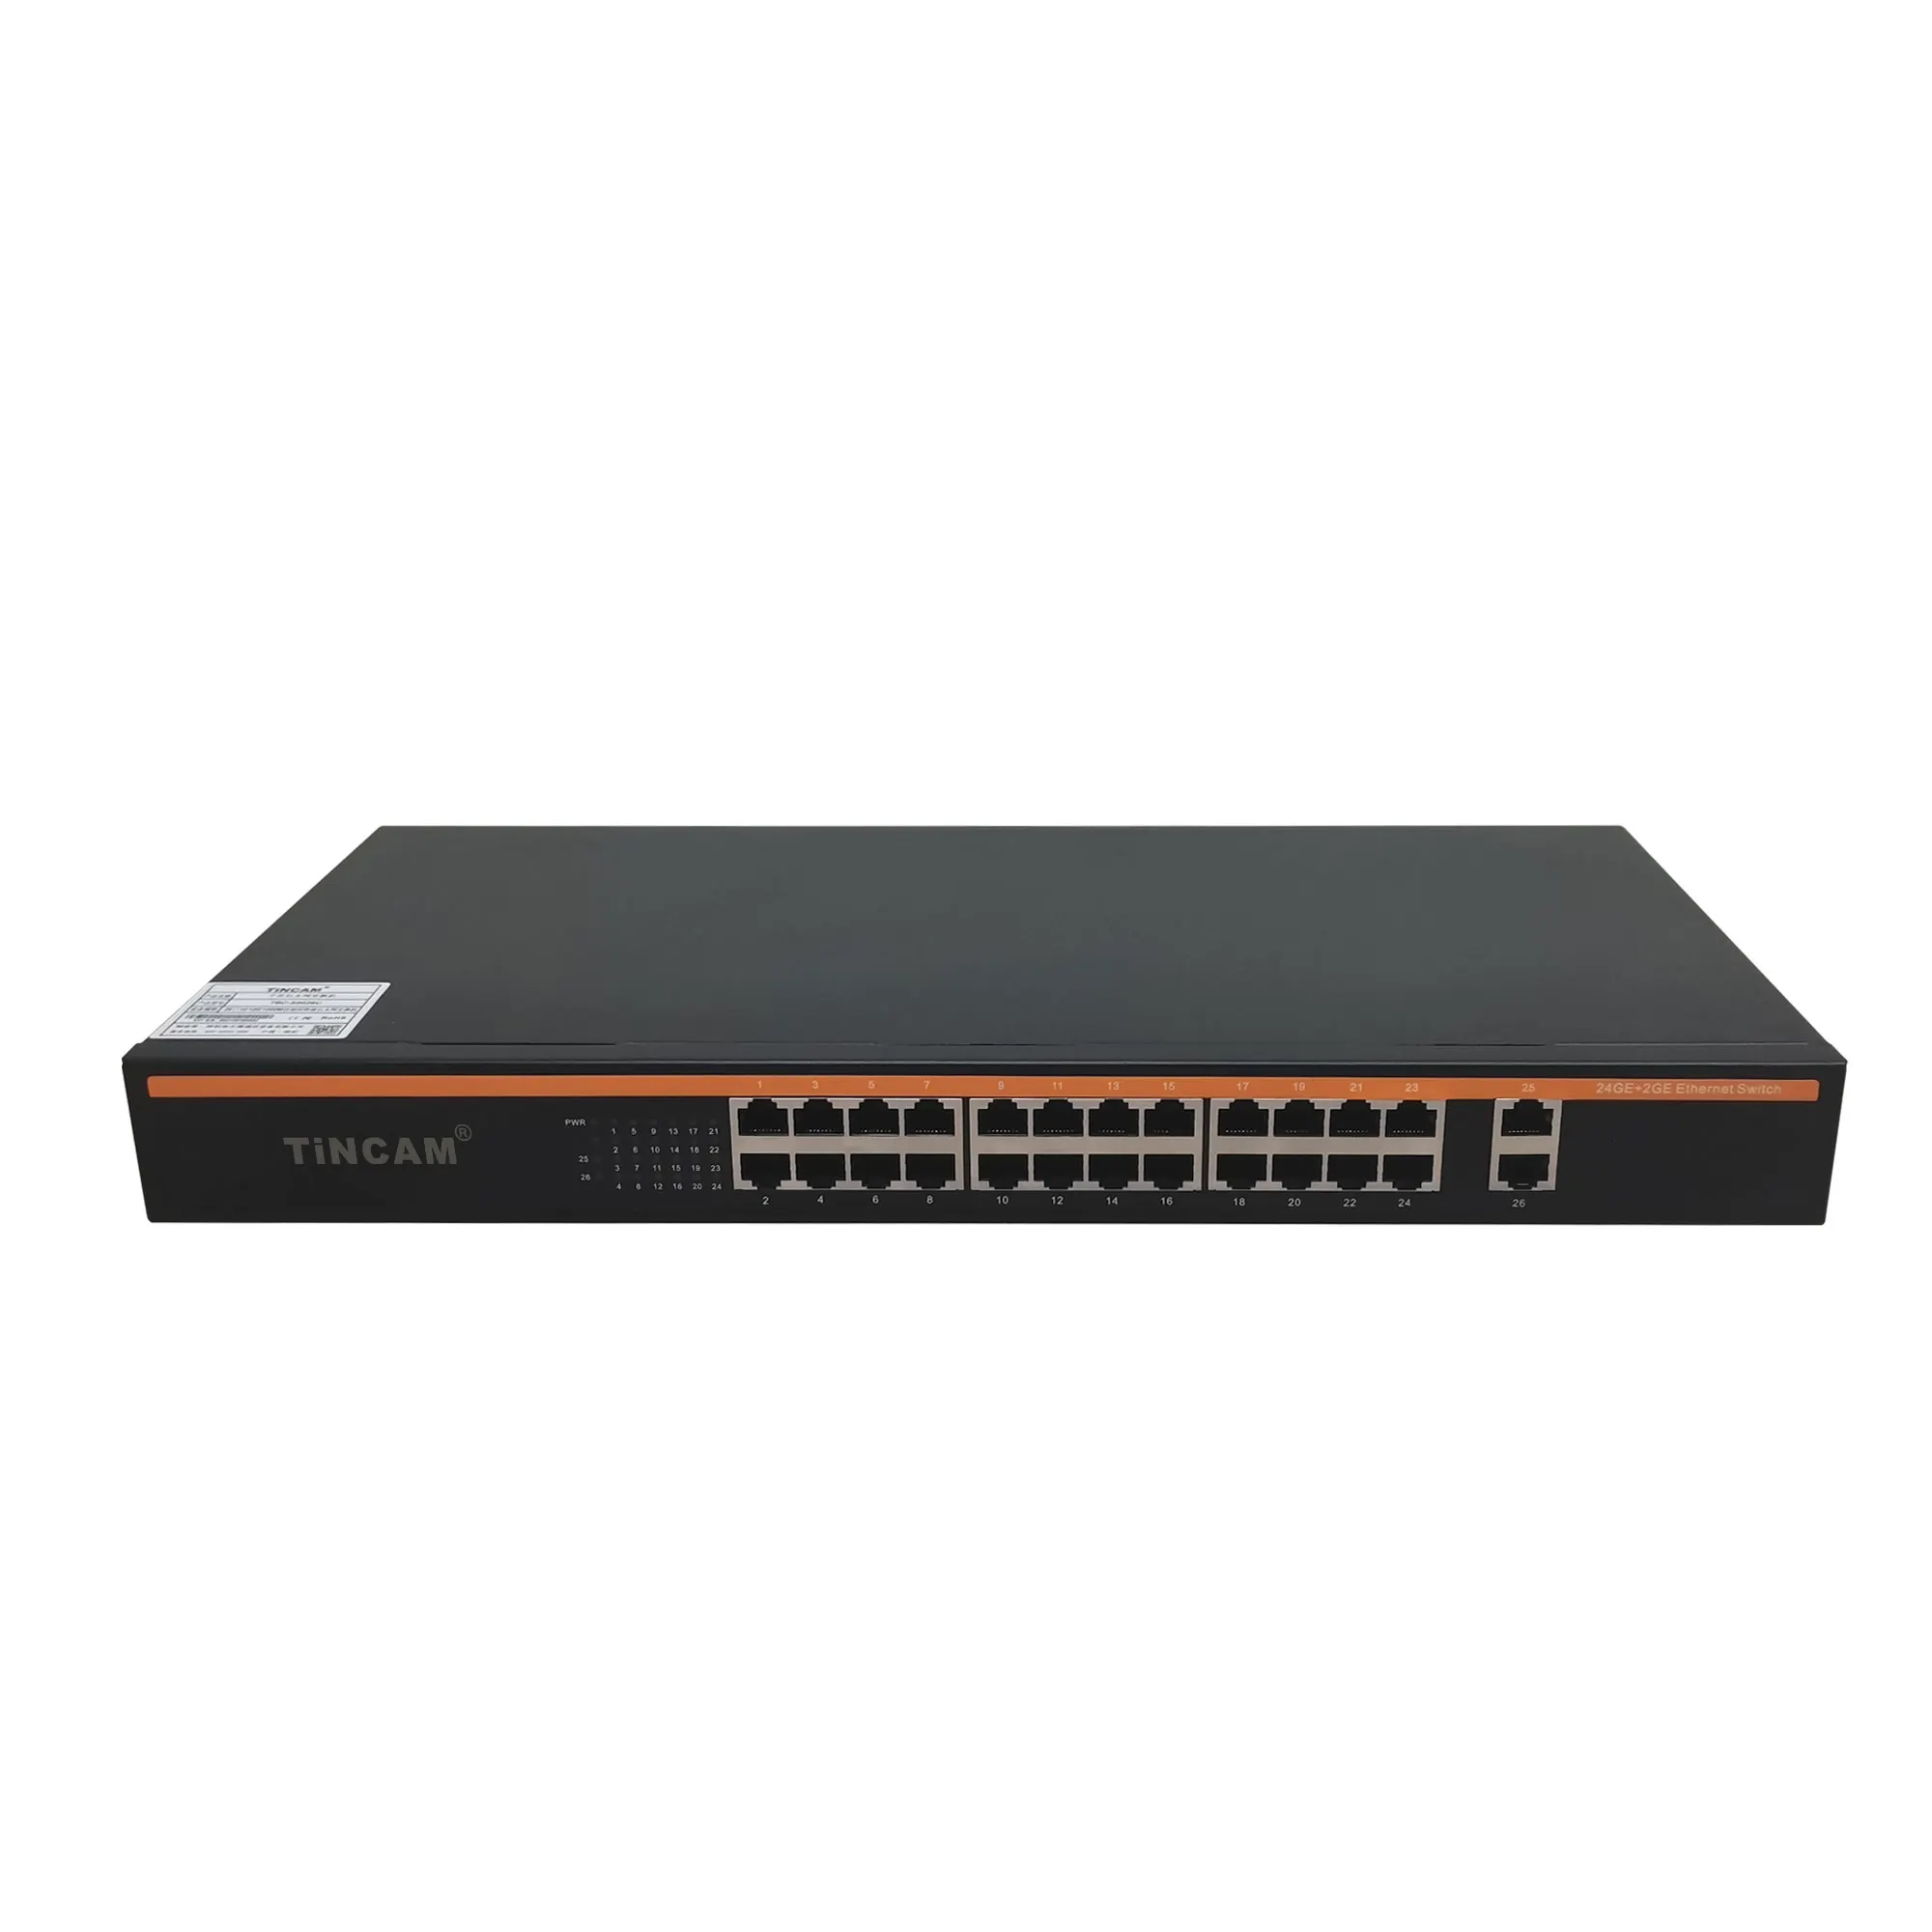 TINCAM 24 порта 10/100/1000 м Неуправляемый коммутатор Ethernet CCTV Ethernet коммутатор с 2 портами восходящего канала 19 дюймов крепление на стойку коммутатор ethernet